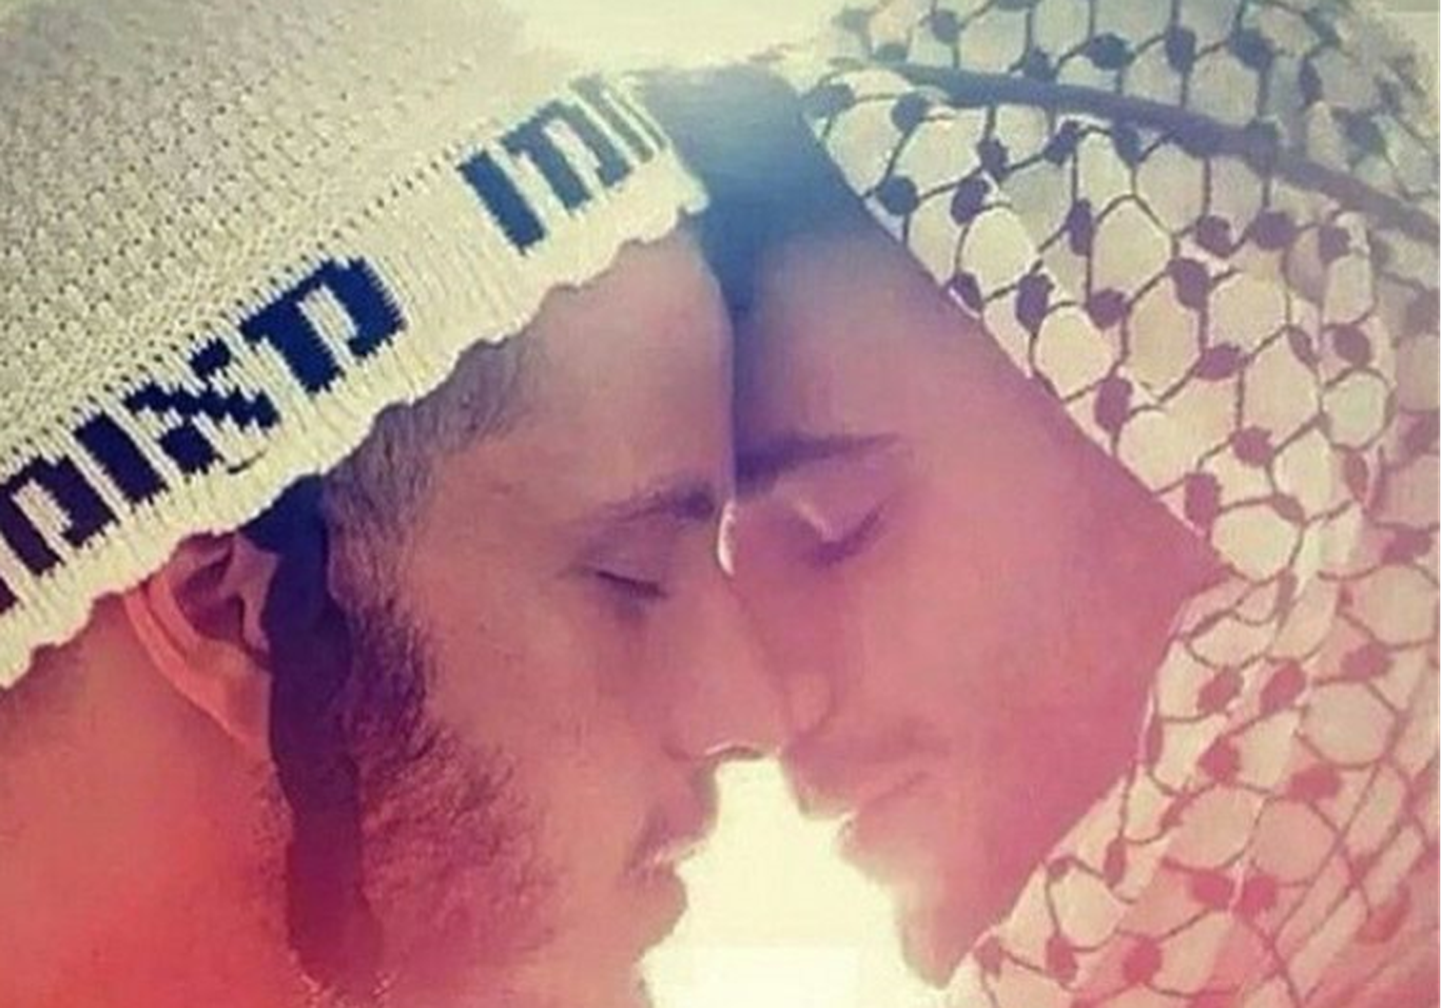 Madonna postitas oma Instagrami pildi, mis kujutab juudi ja moslemi meest  suudlemas